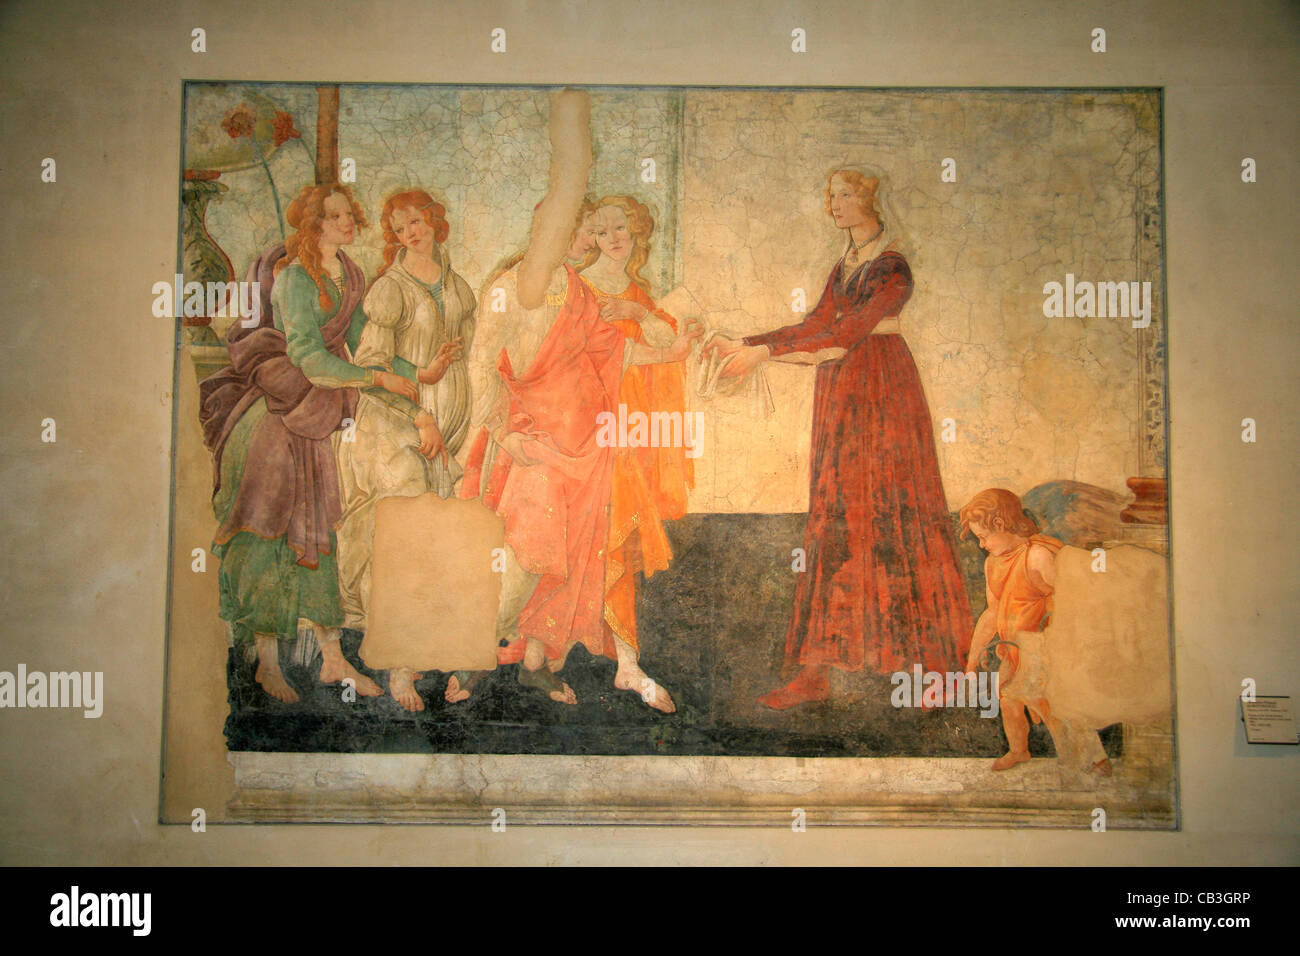 Vénus et les Grâces, Botticelli, xve siècle, musée du Louvre, Paris. Banque D'Images